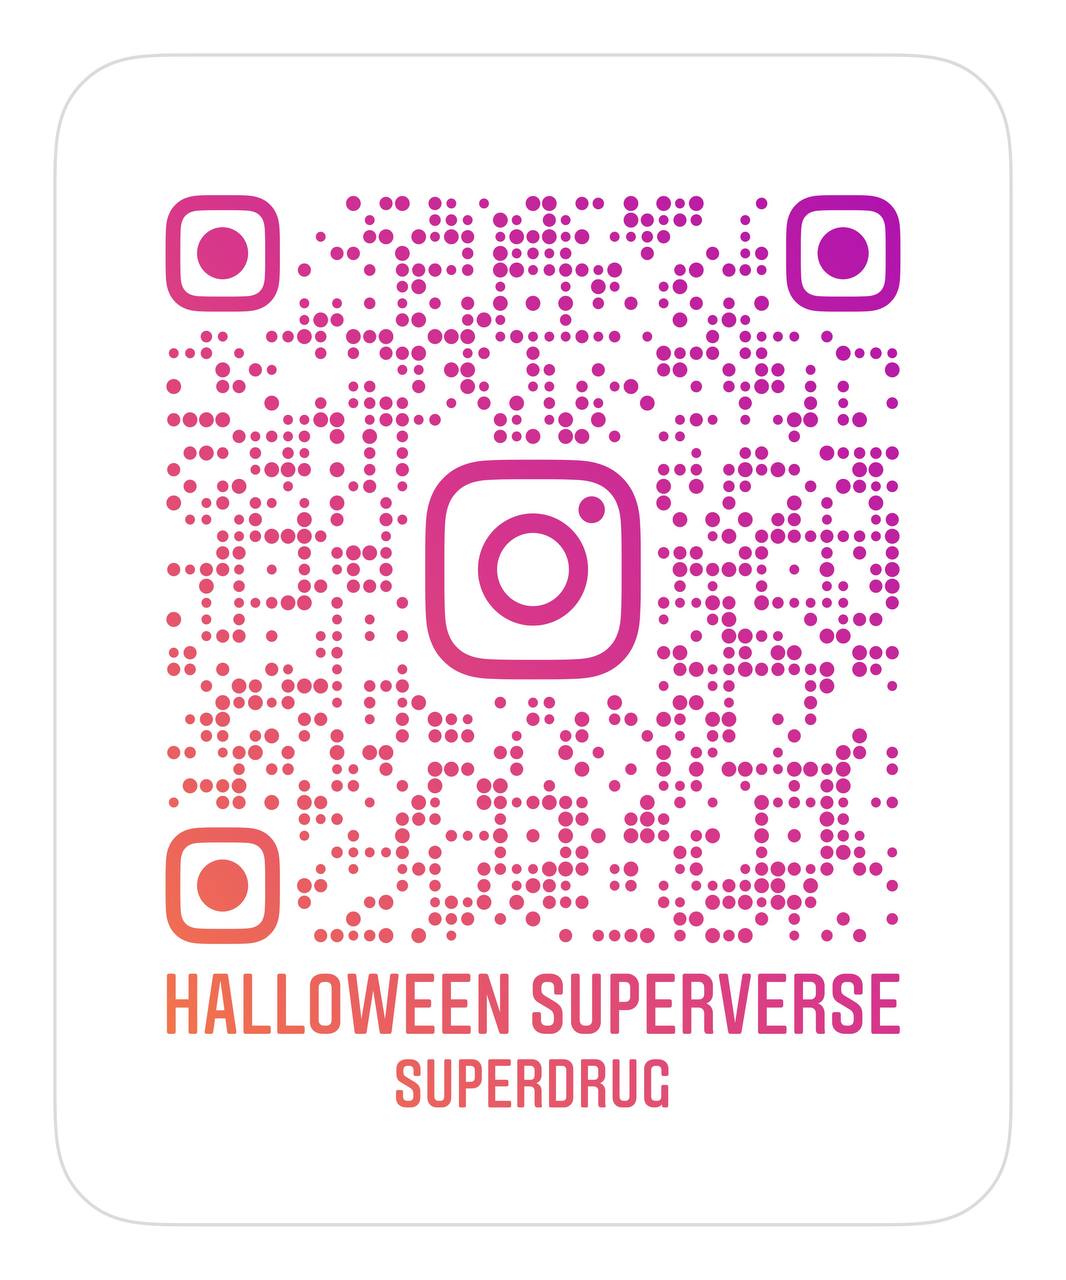 Link to Halloween Instagram filters